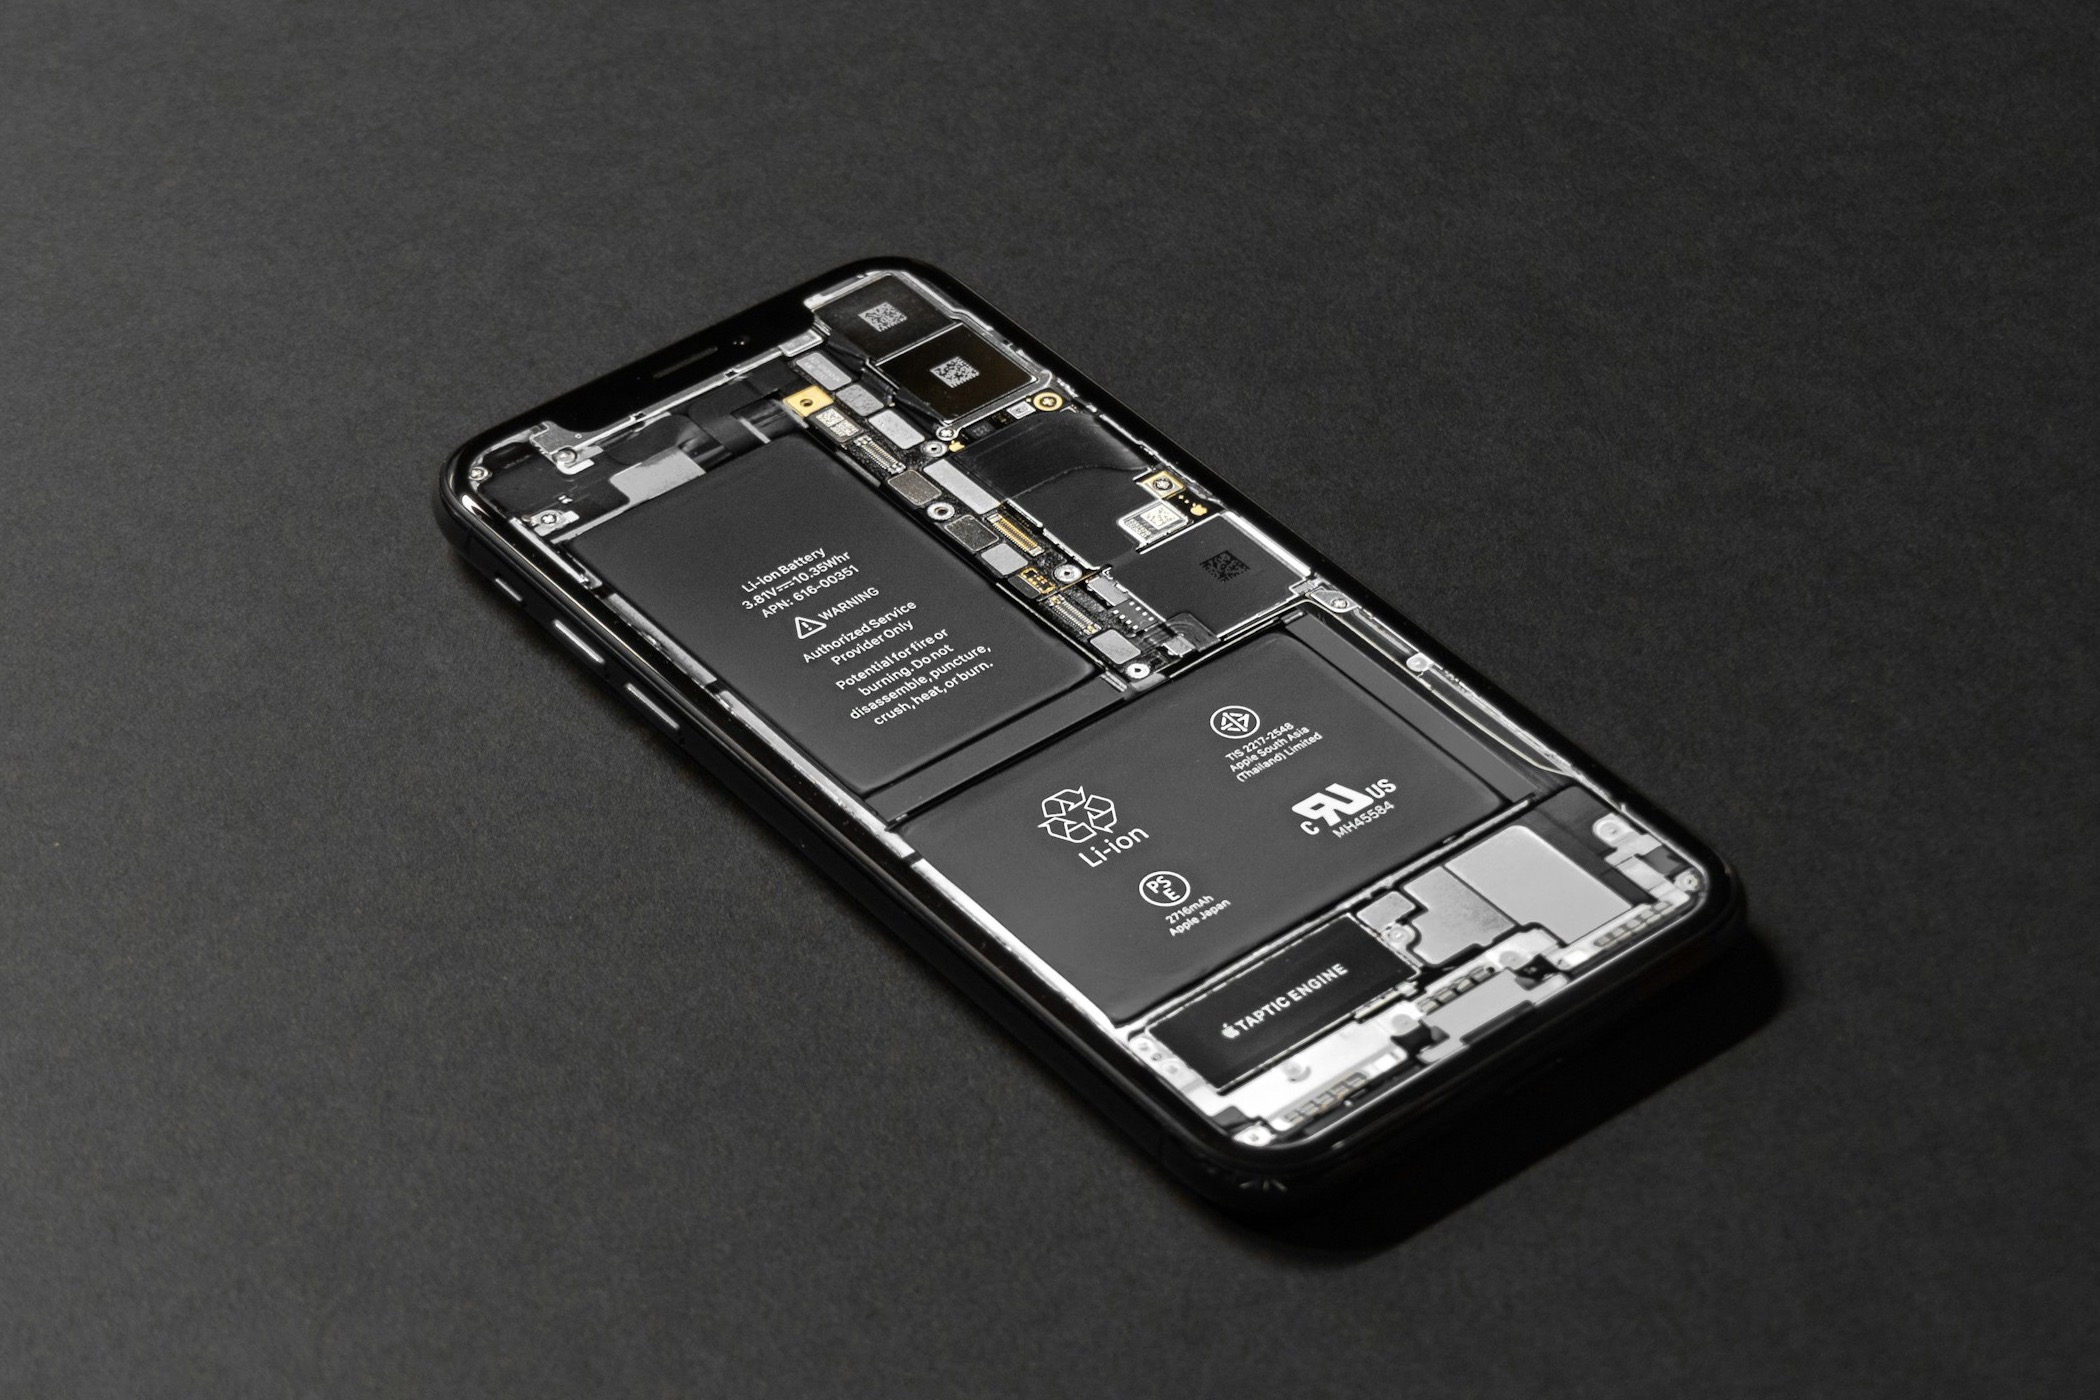 Batería dentro de un iPhone.